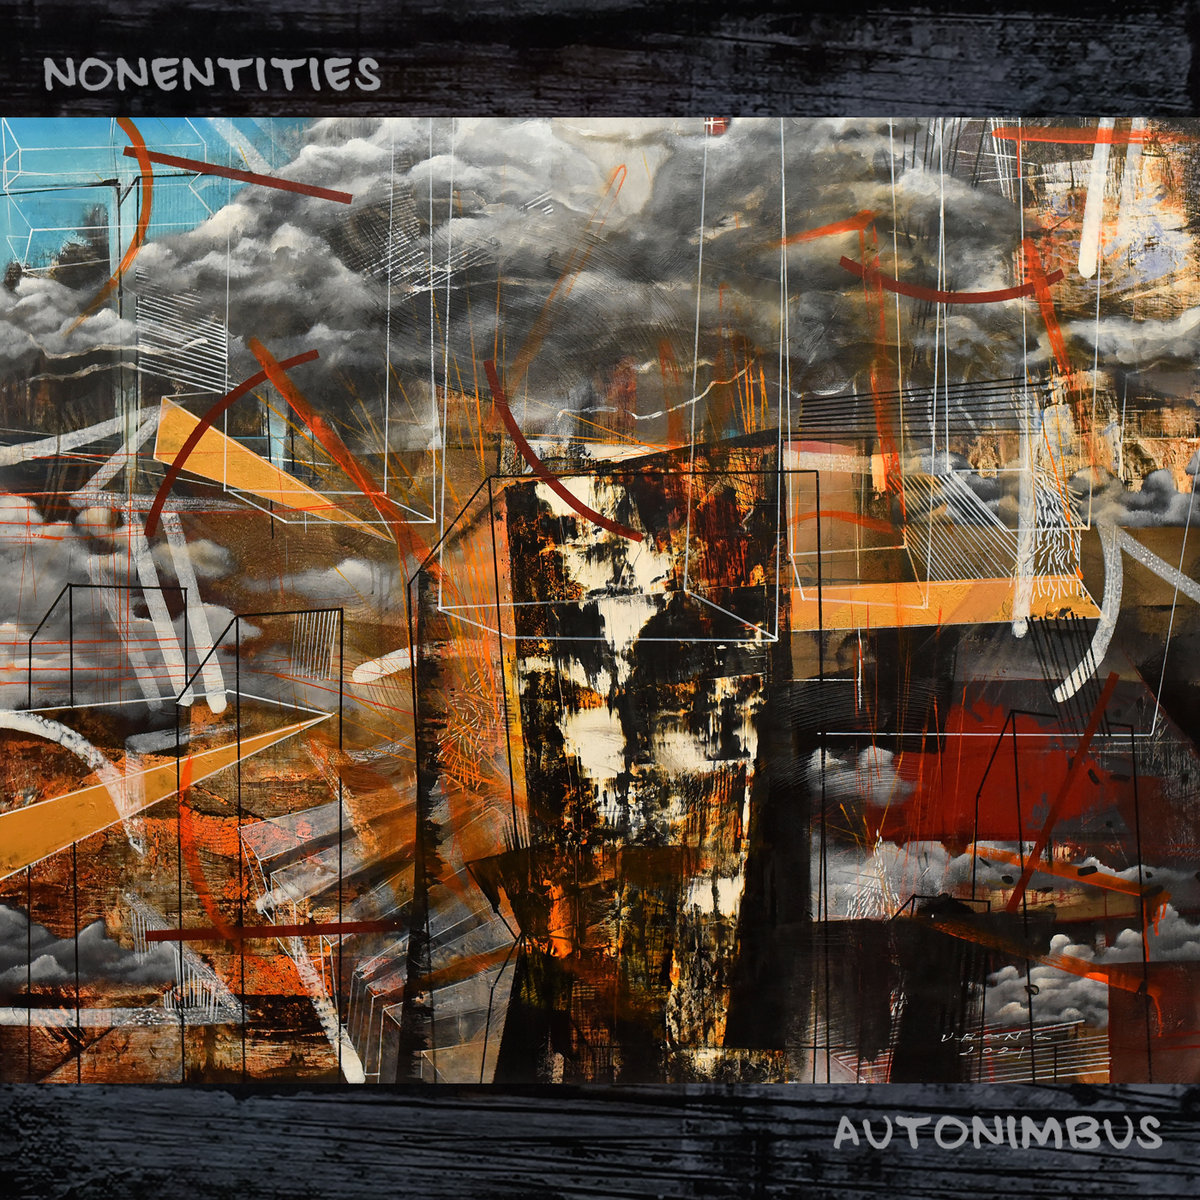 ALBUM REVIEW: Nonentities – Autonimbus